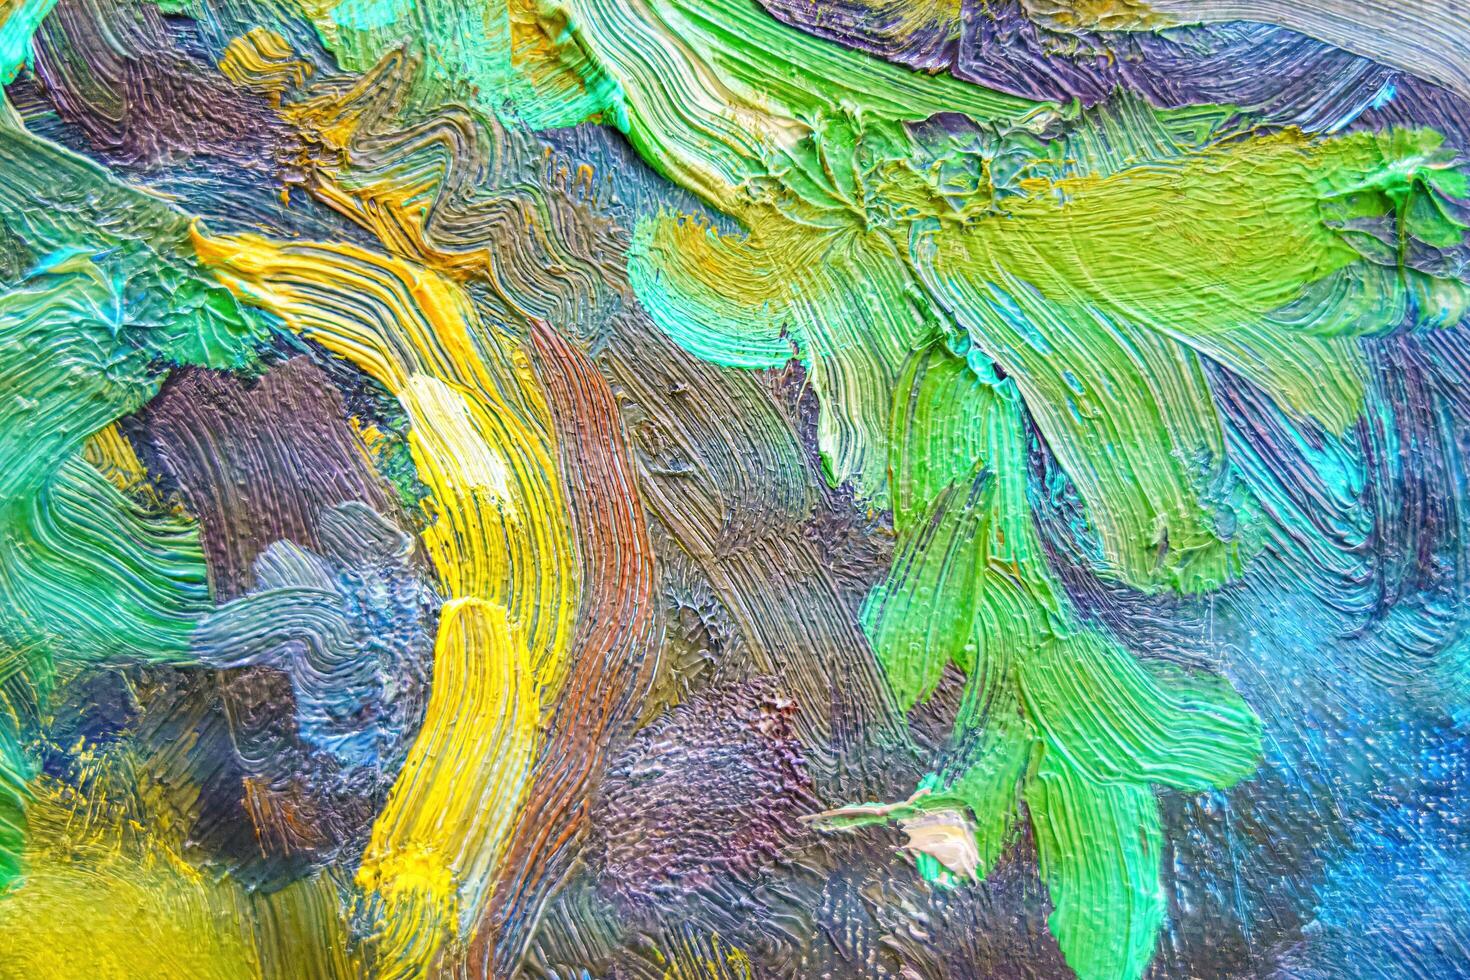 färgrik abstrakt olja målning konst bakgrund. textur av duk och olja. foto